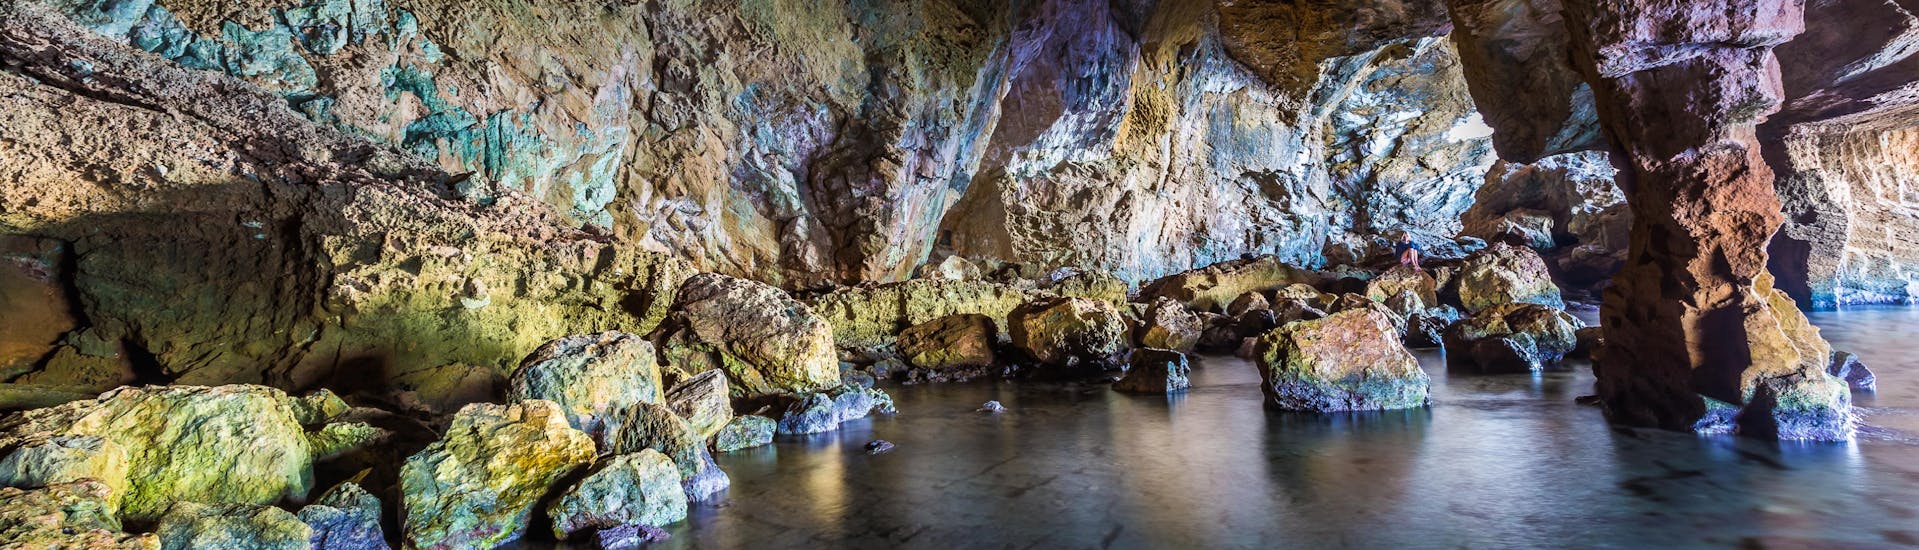 Blick in das Innere der Höhle während einer Bootsfahrt zur Cova Tallada.